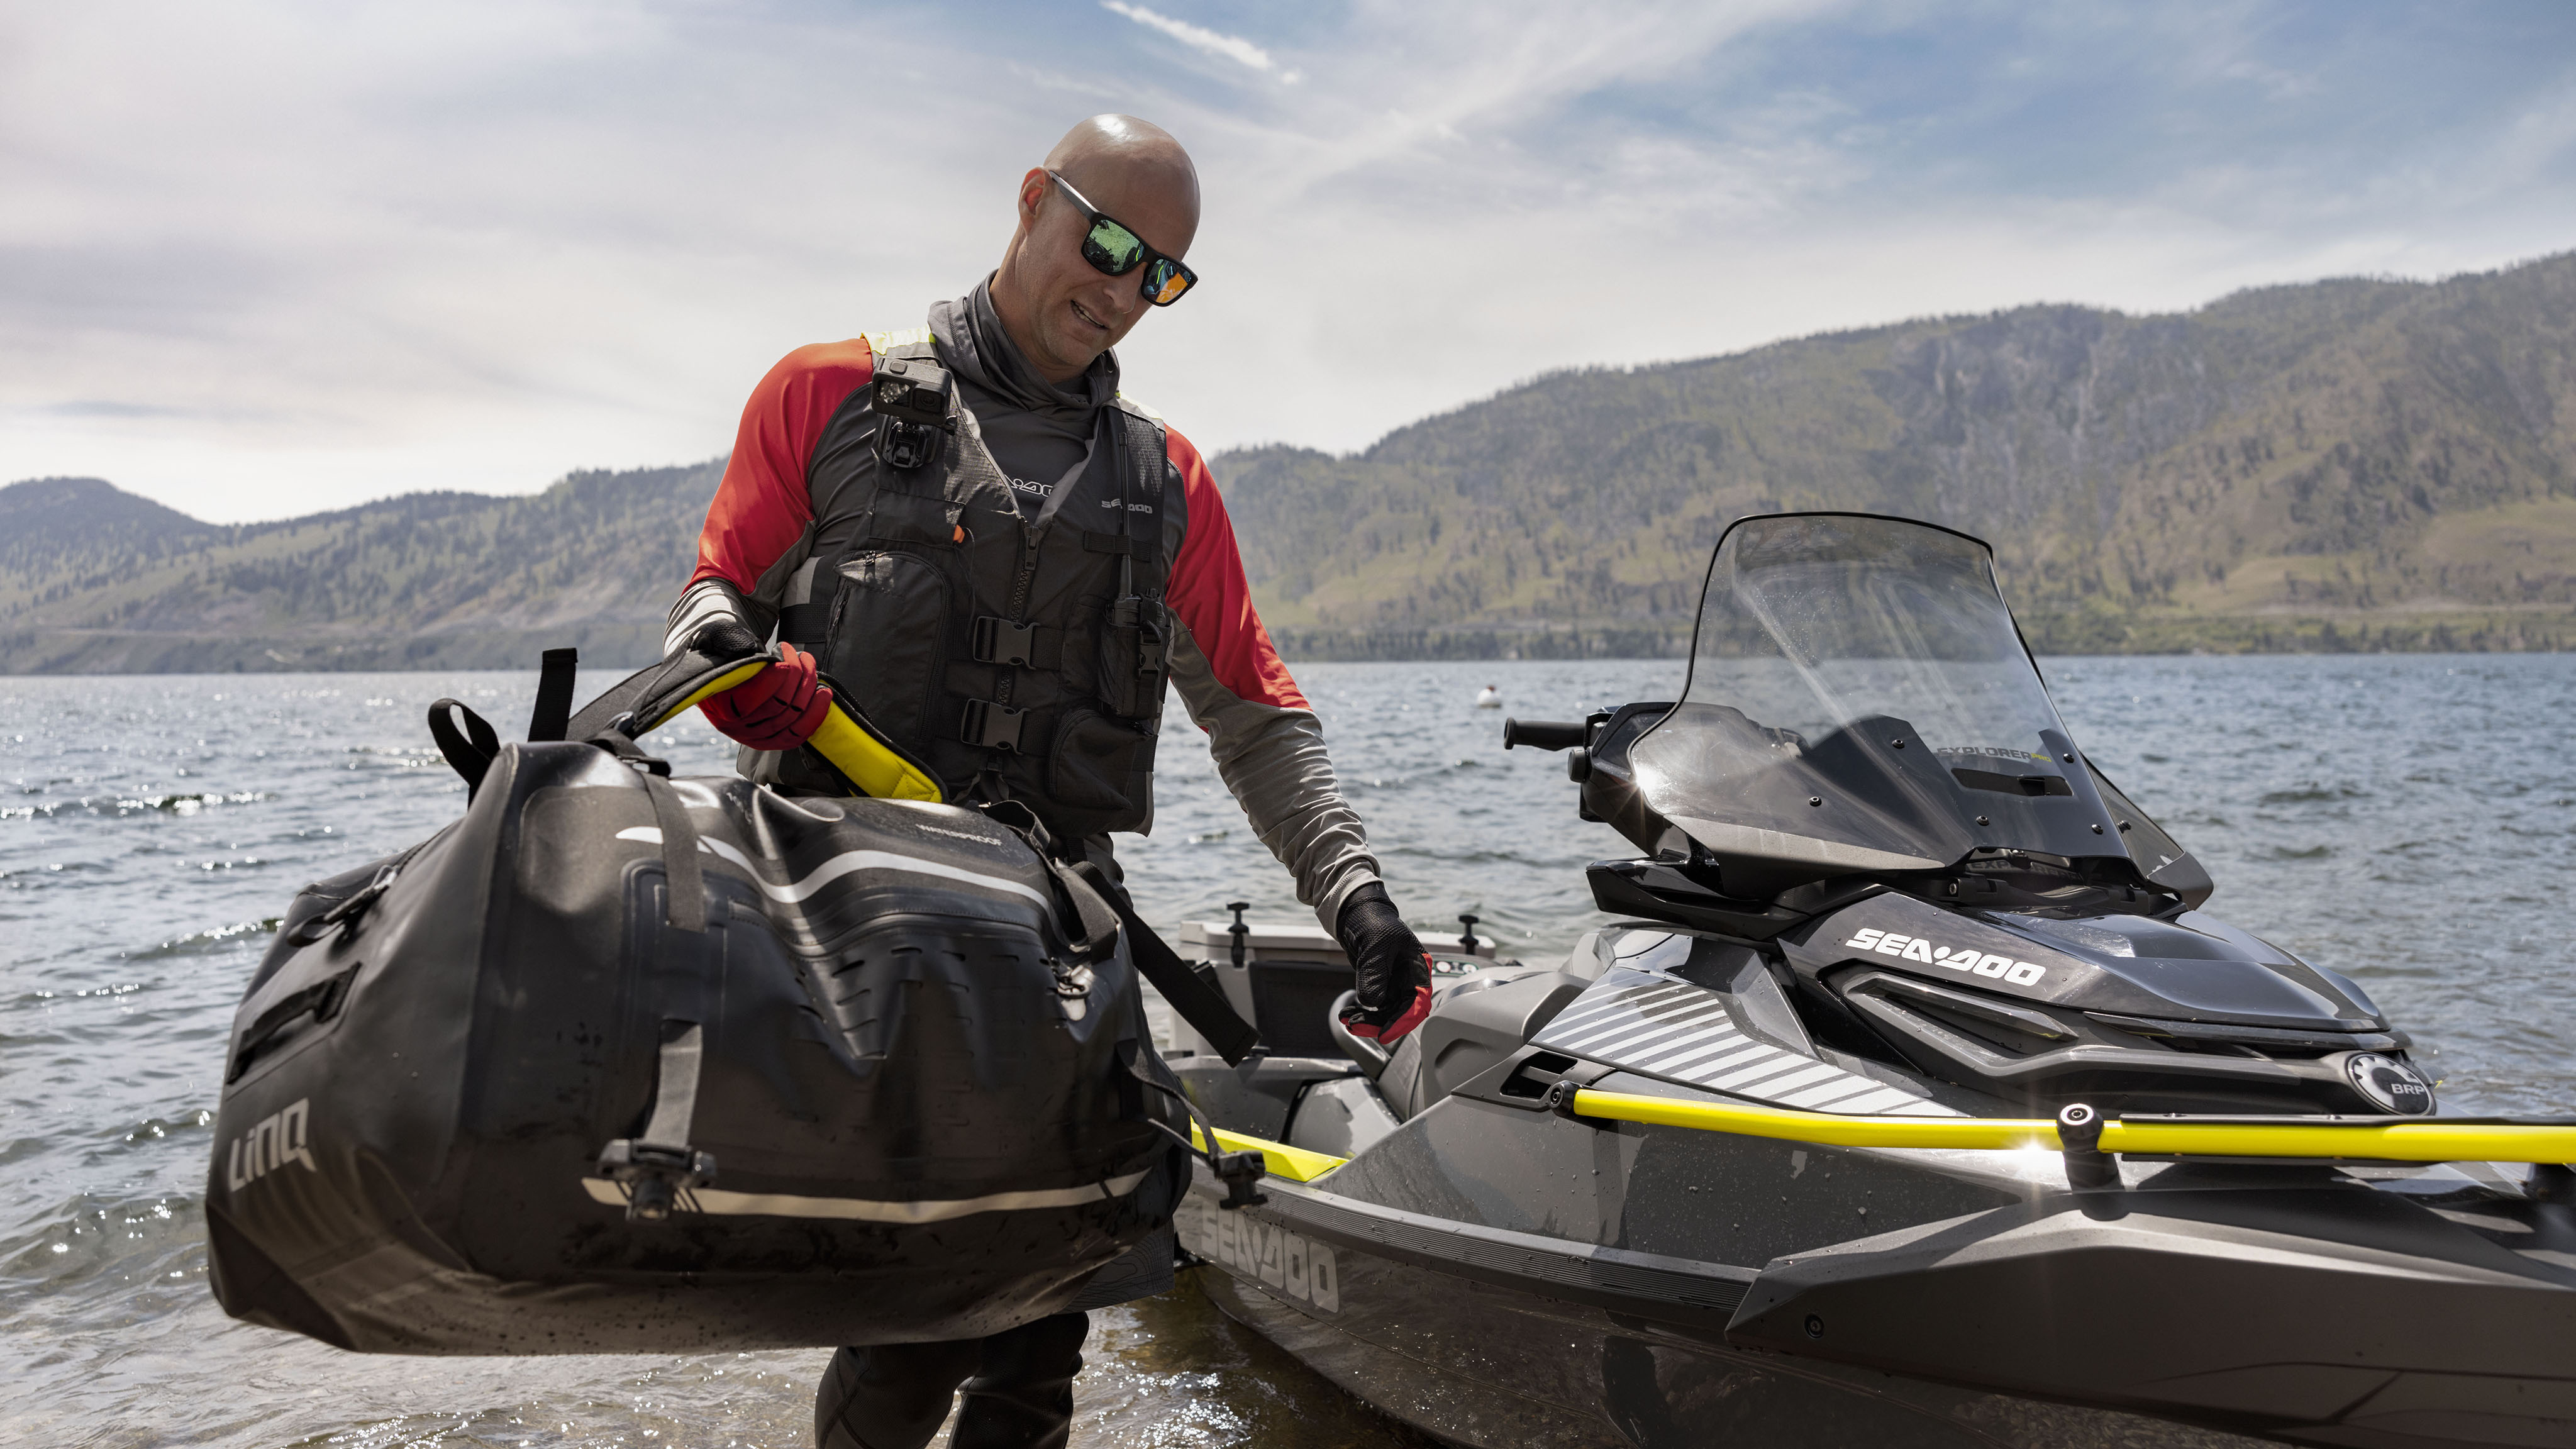 Sea-Doo Explorer Proの隣でエクスプローラーバッグを抱えている男性